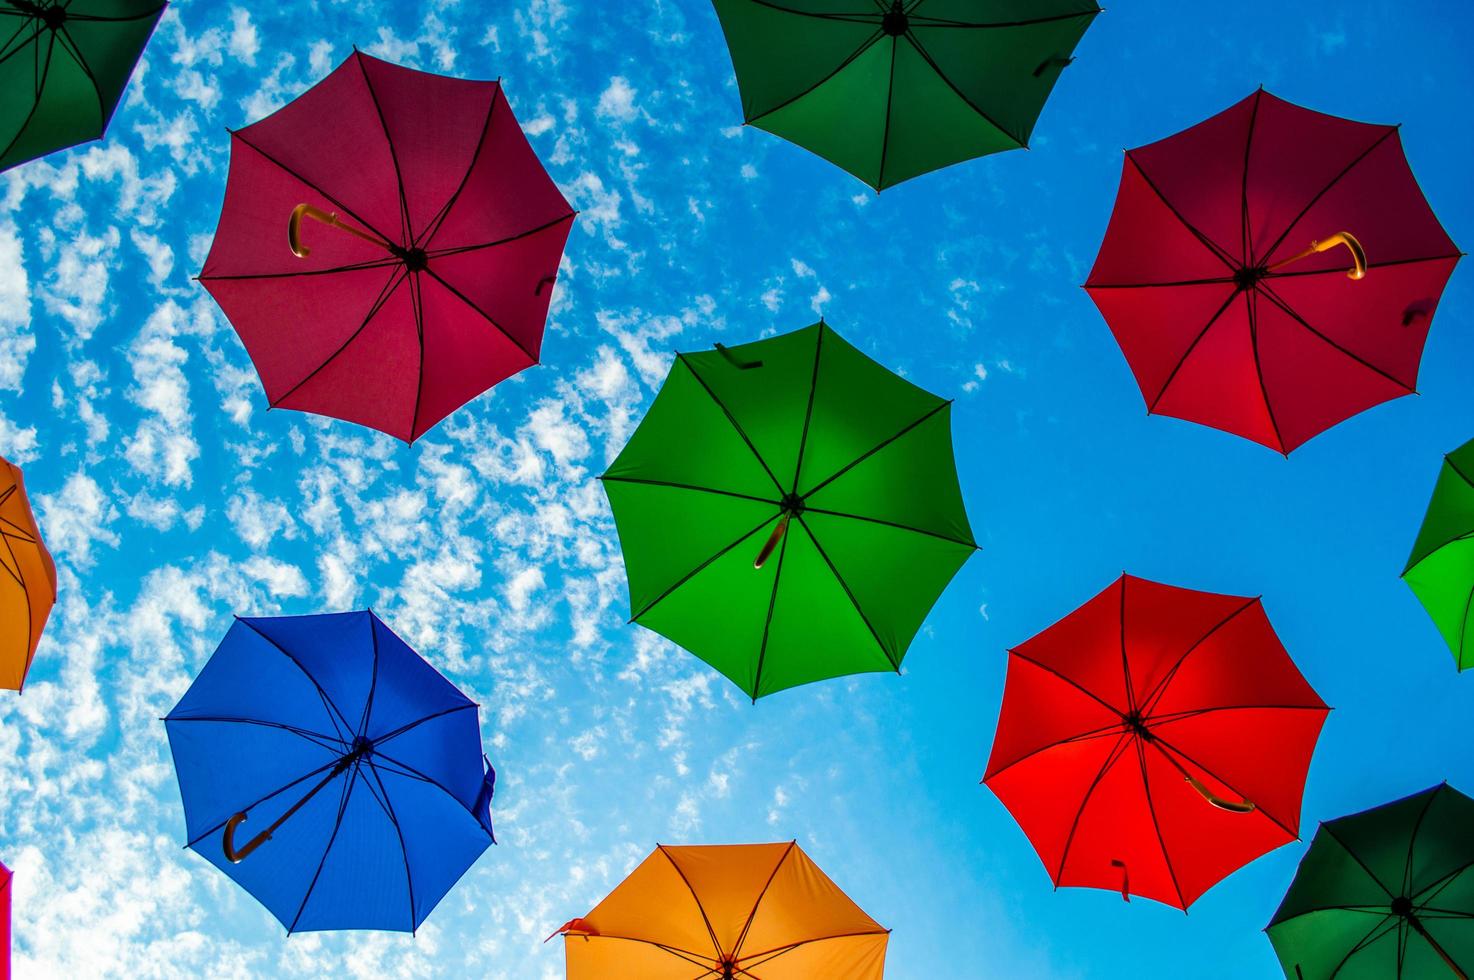 multi gekleurde paraplu's met blauwe hemel foto